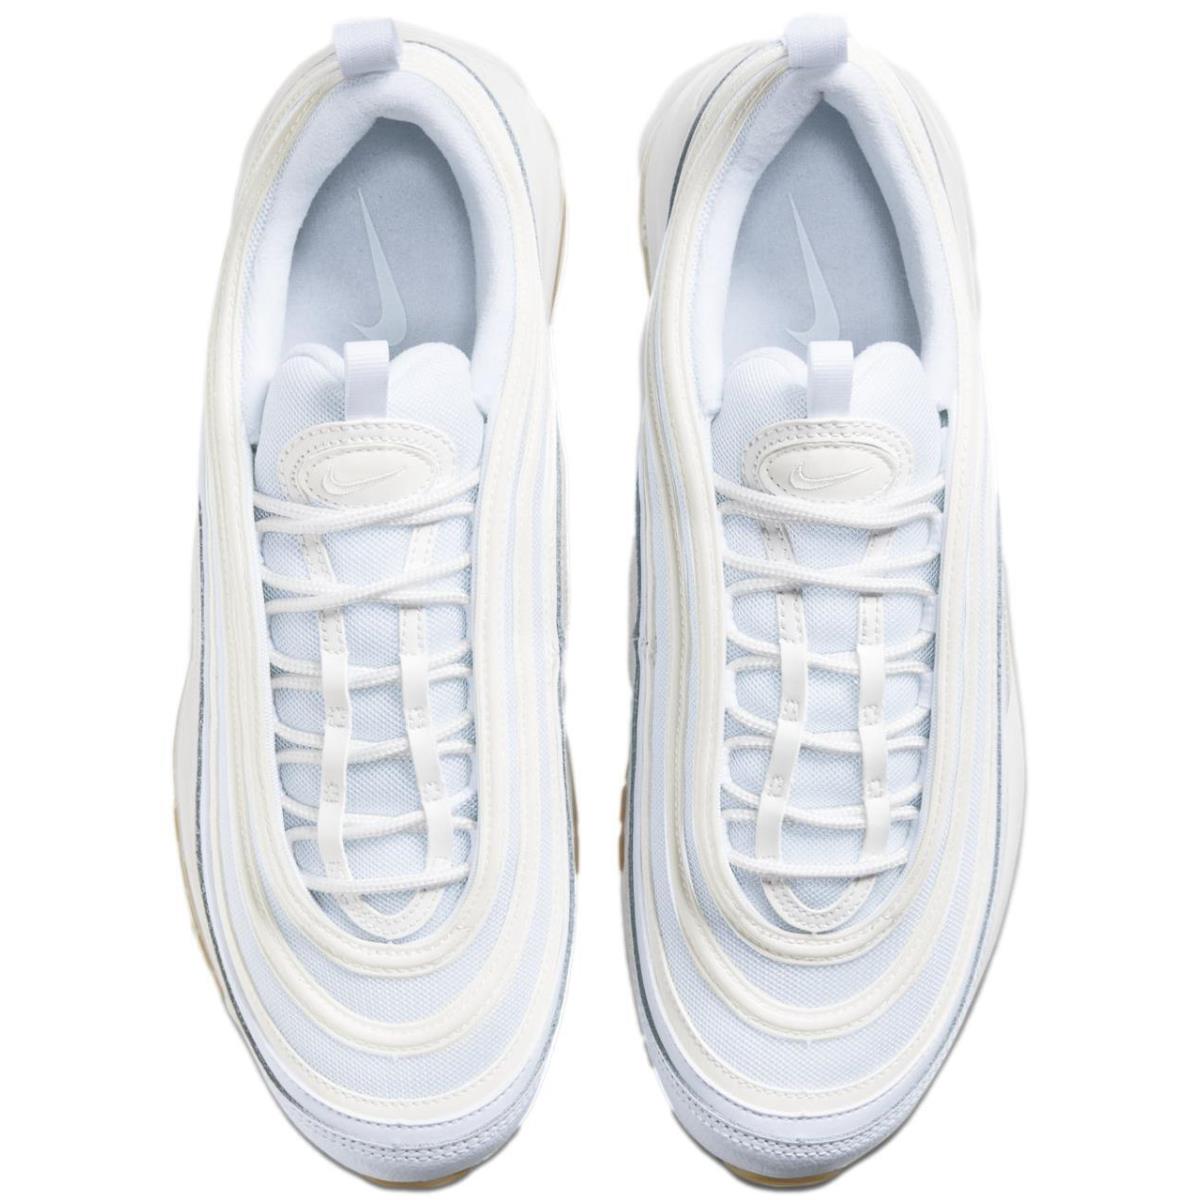 Nike shoes Air Max - White/White-Gum Light Brown 3